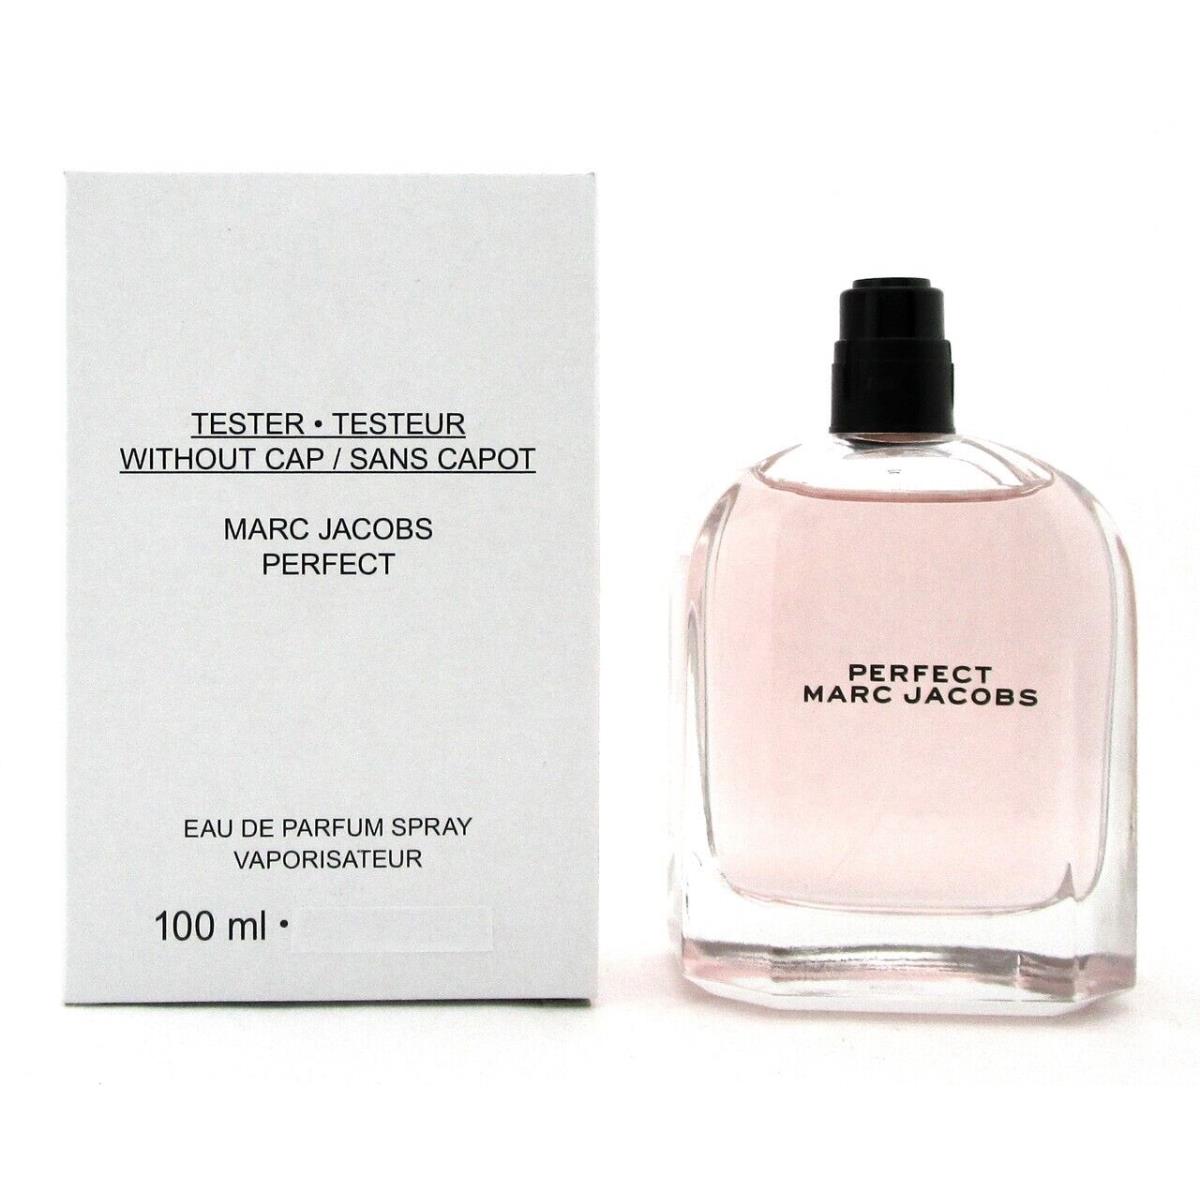 Marc Jacobs Perfect For Women 100 ml 3.3 oz Edp Spray White Box with Cap